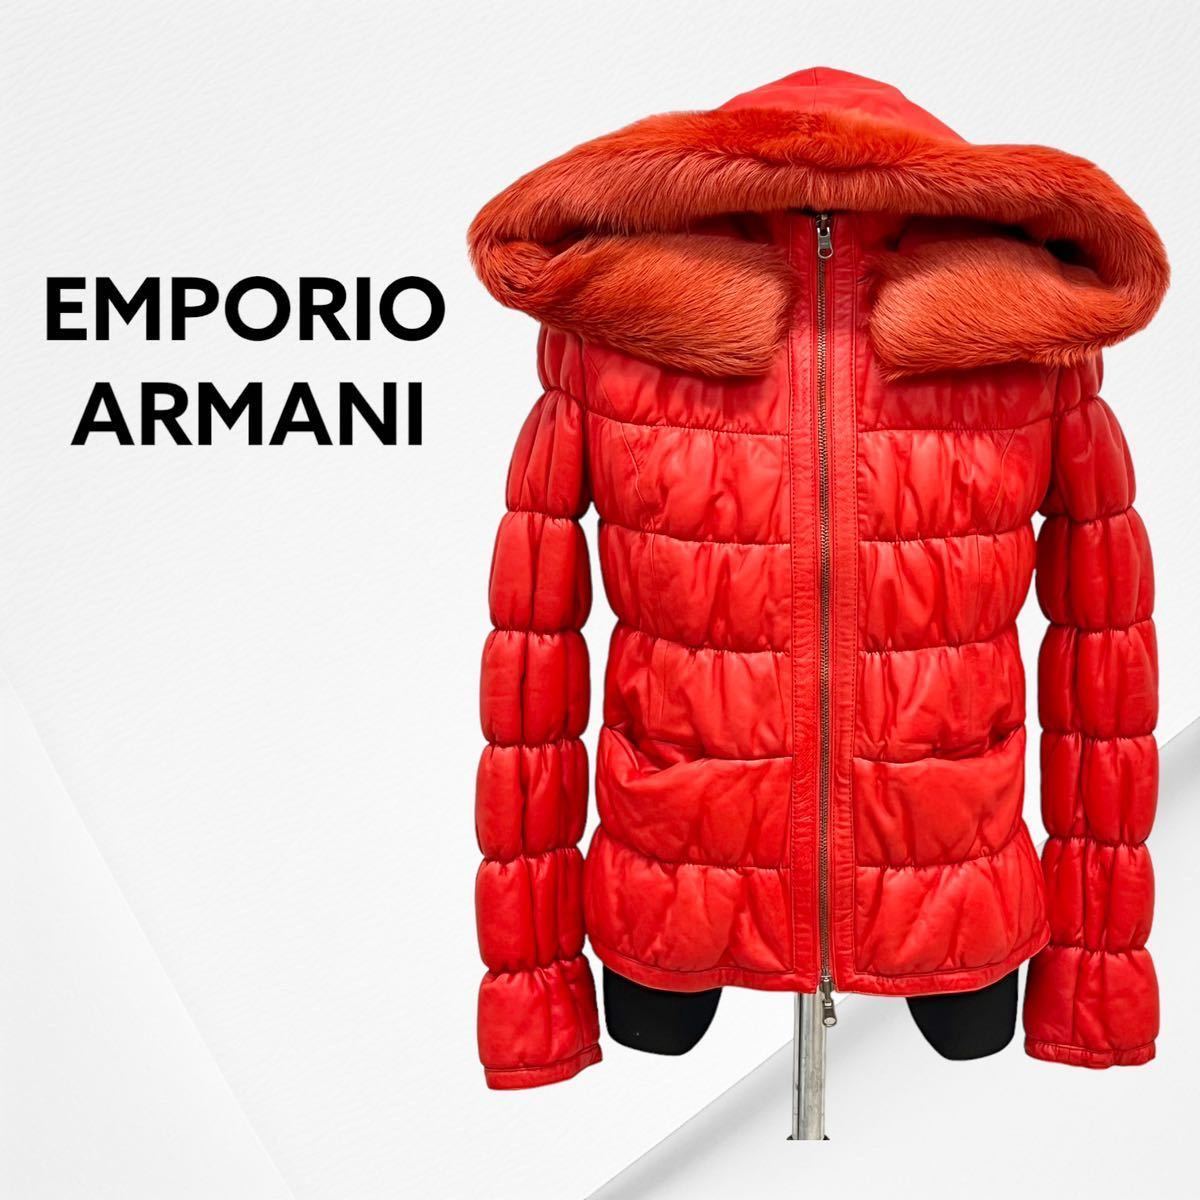 EMPORIO ARMANI エンポリオ アルマーニ ラムレザー ナイロン リアルファー フード付き リバーシブル 中綿ジャケット レディース K2B08P_画像1